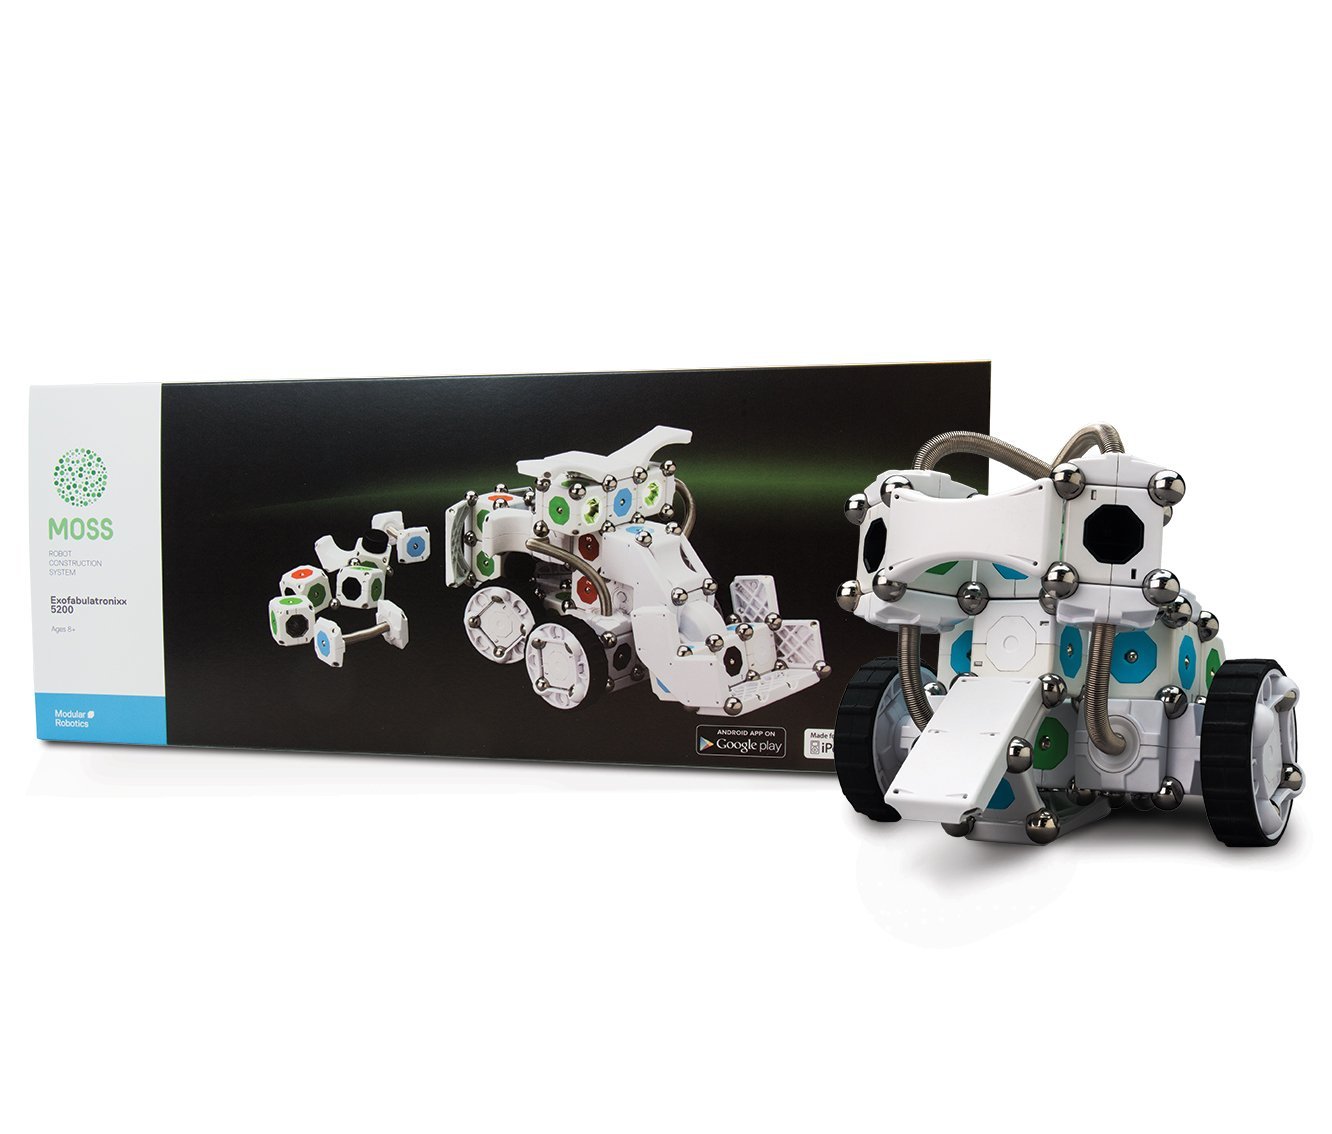 LIGHTNING DEAL ALERT! Modular Robotics MOSS Kit 50% off